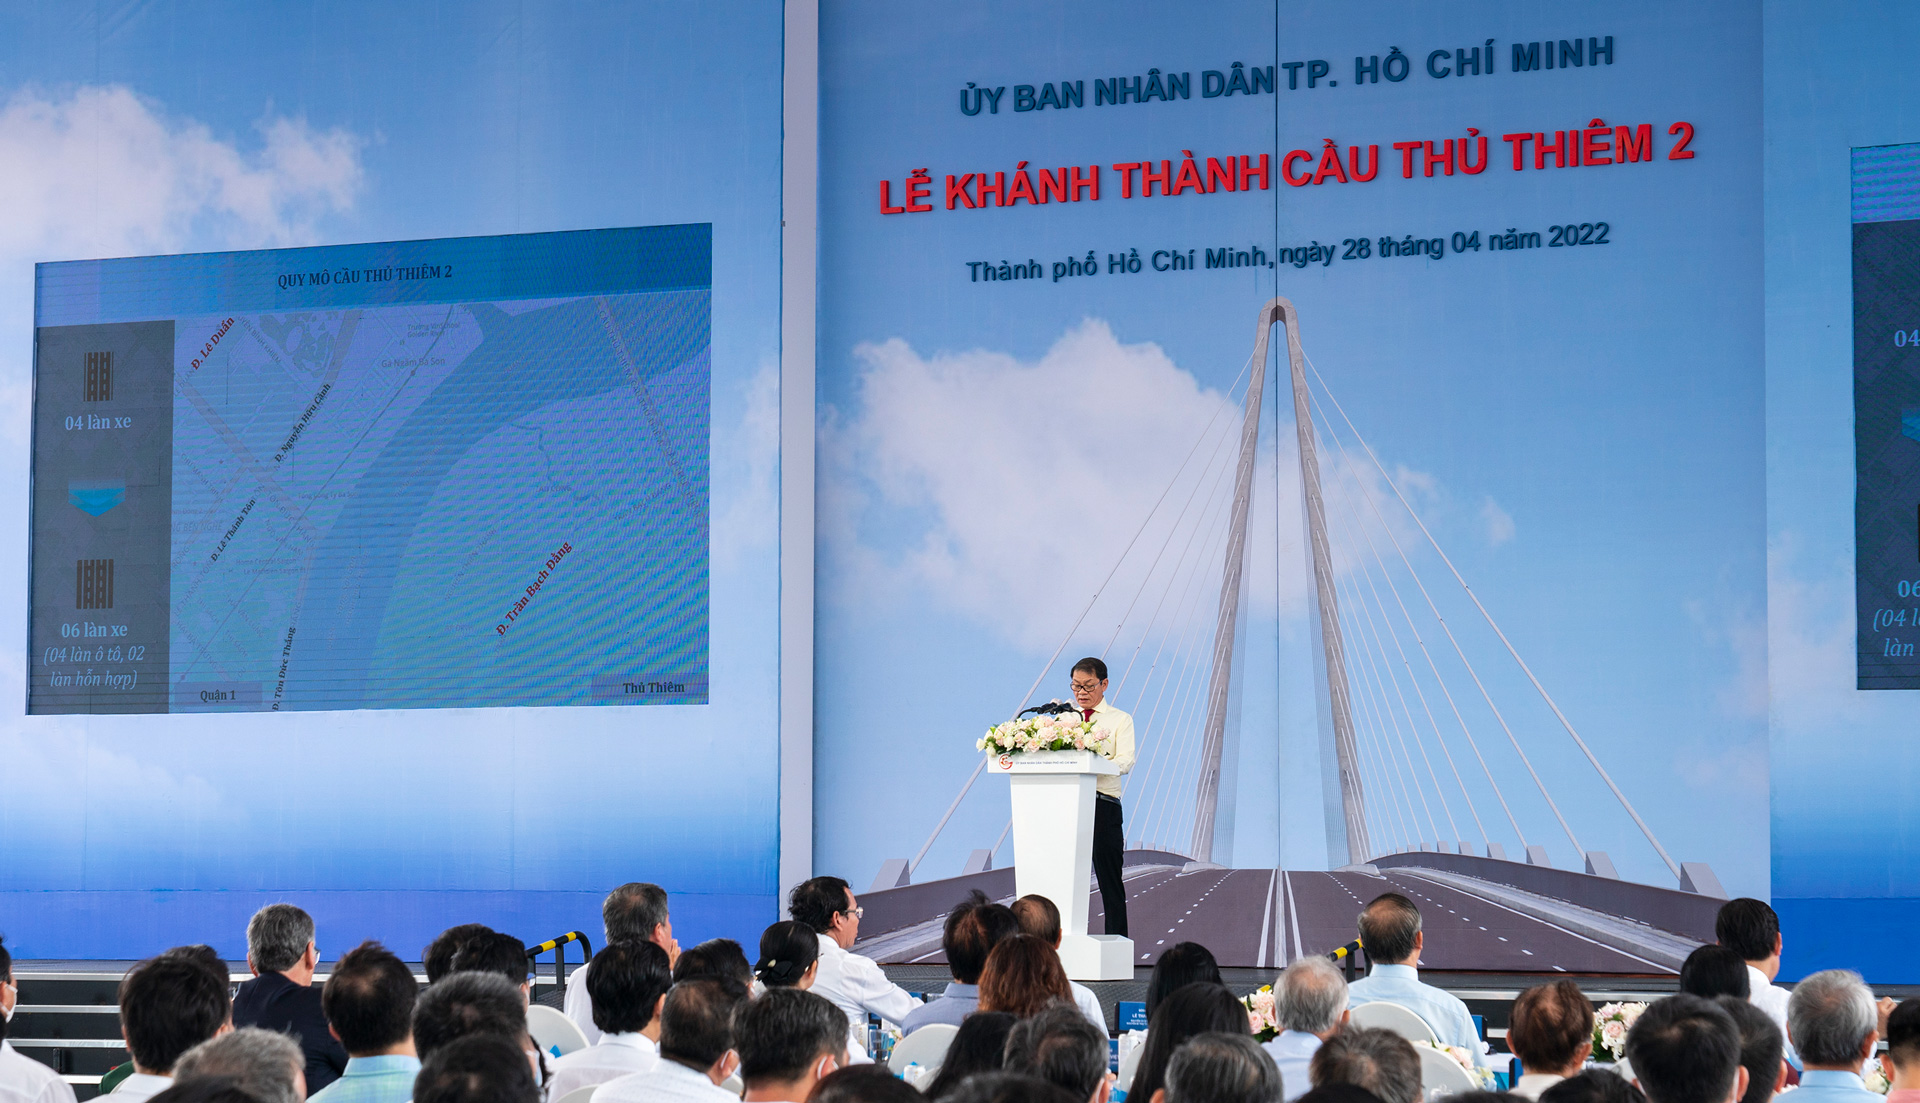 Phát biểu tại buổi lễ, Ông Trần Bá Dương - Chủ tịch HĐQT THACO, Chủ tịch HĐQT công ty Đại Quang Minh